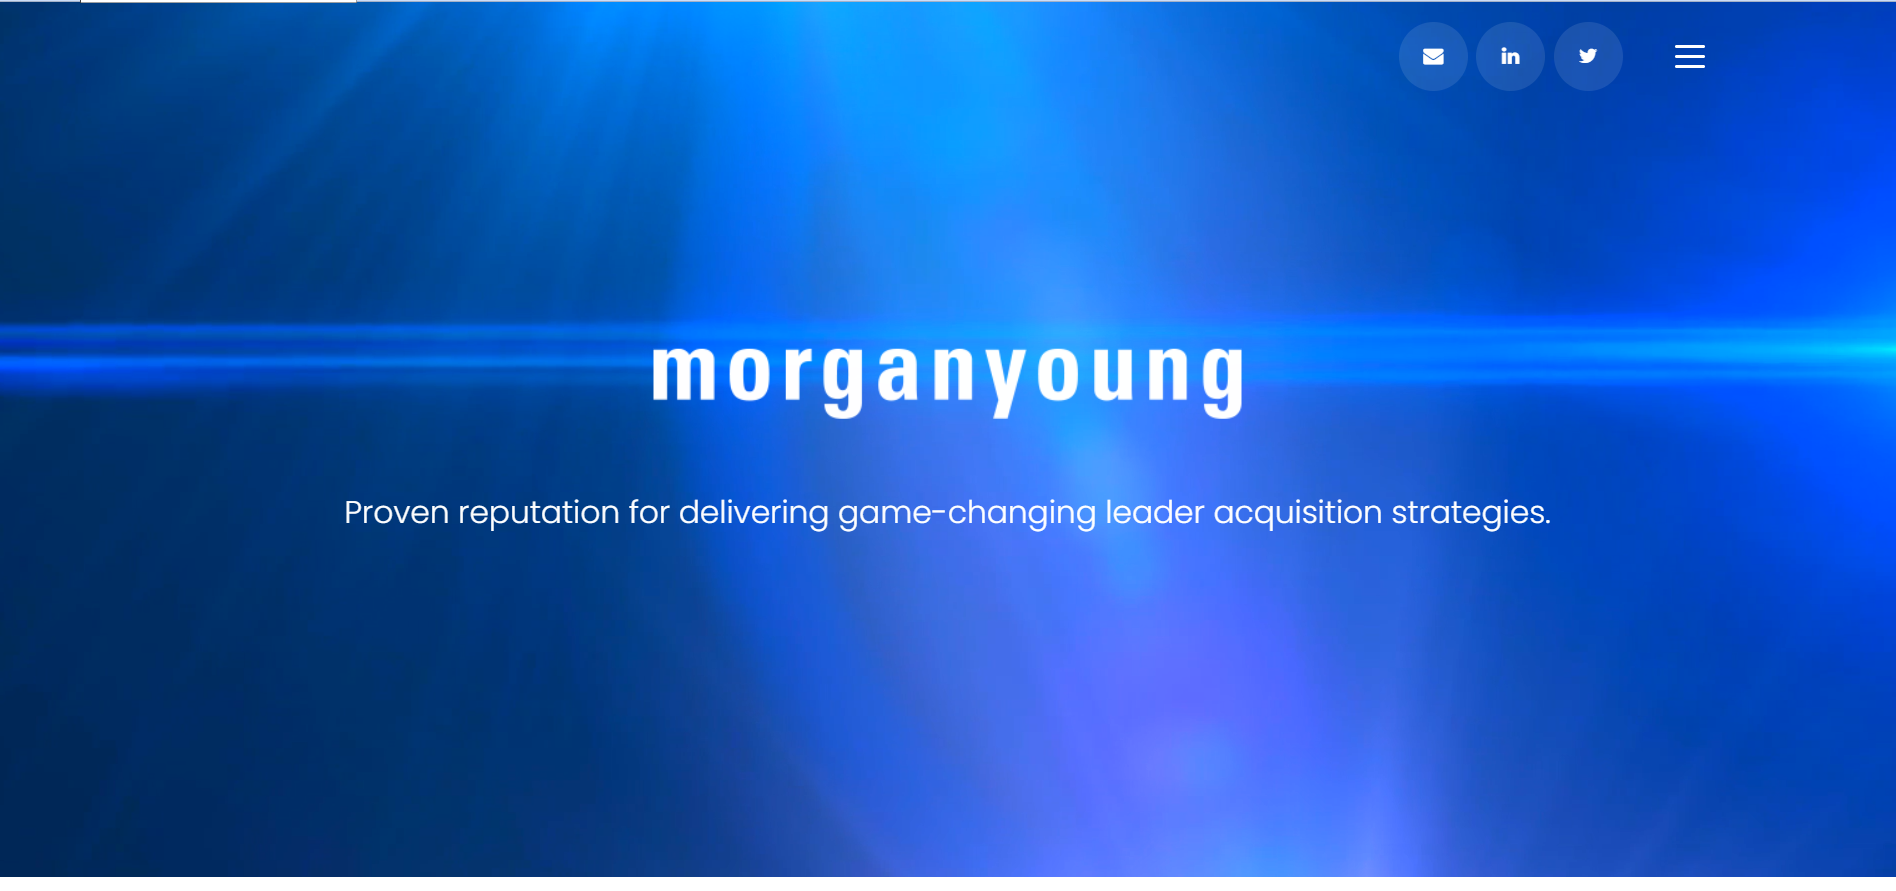 Morgan Young Image